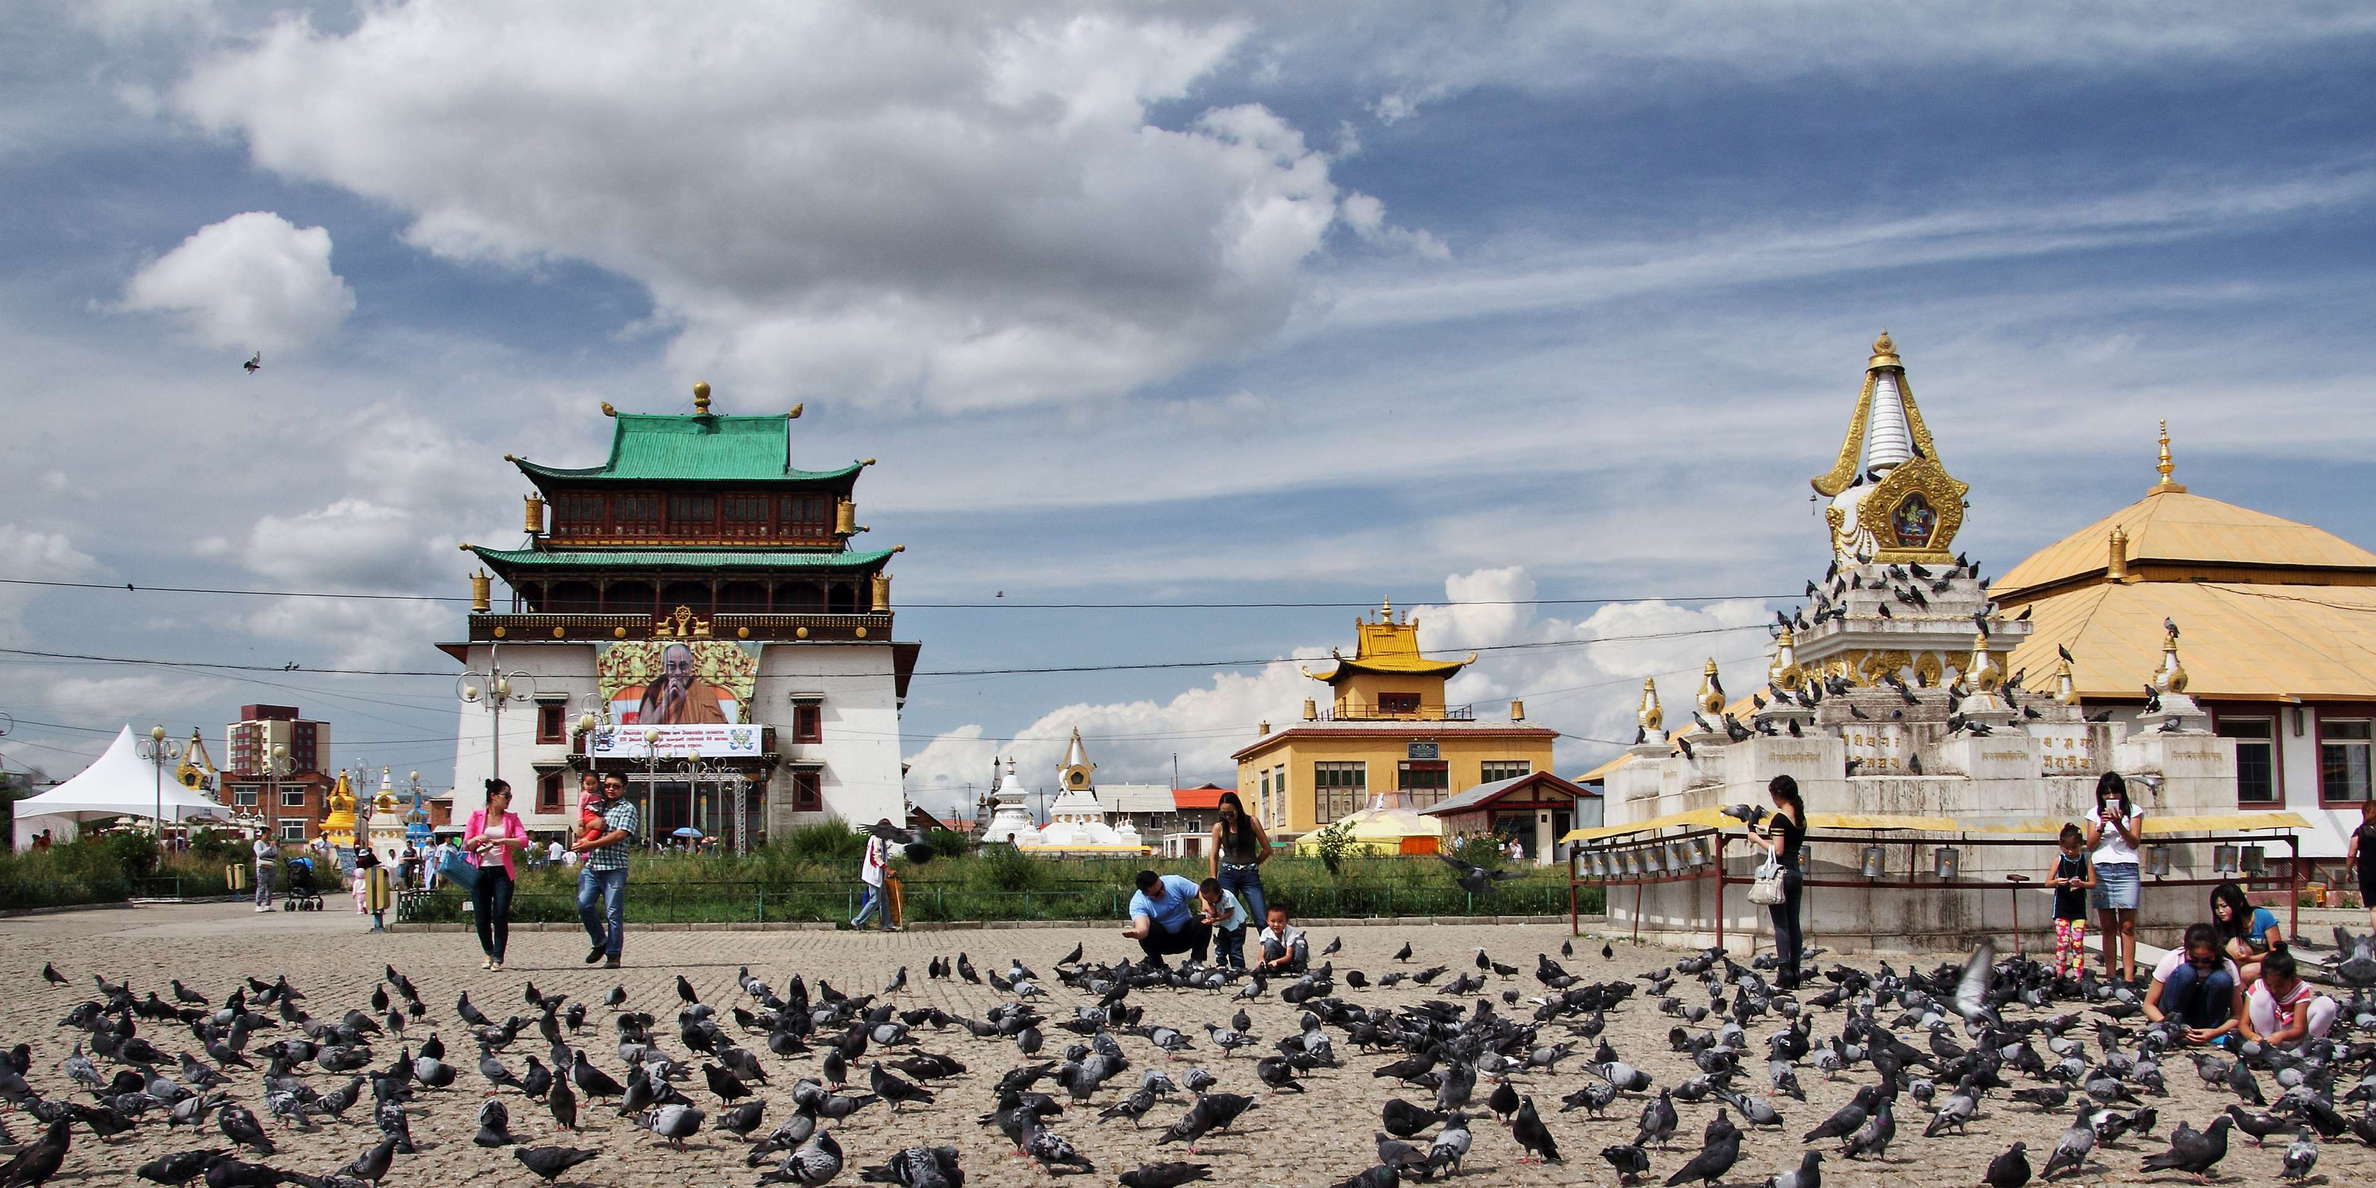 Ulaan Baatar  |  Gandan Monastery